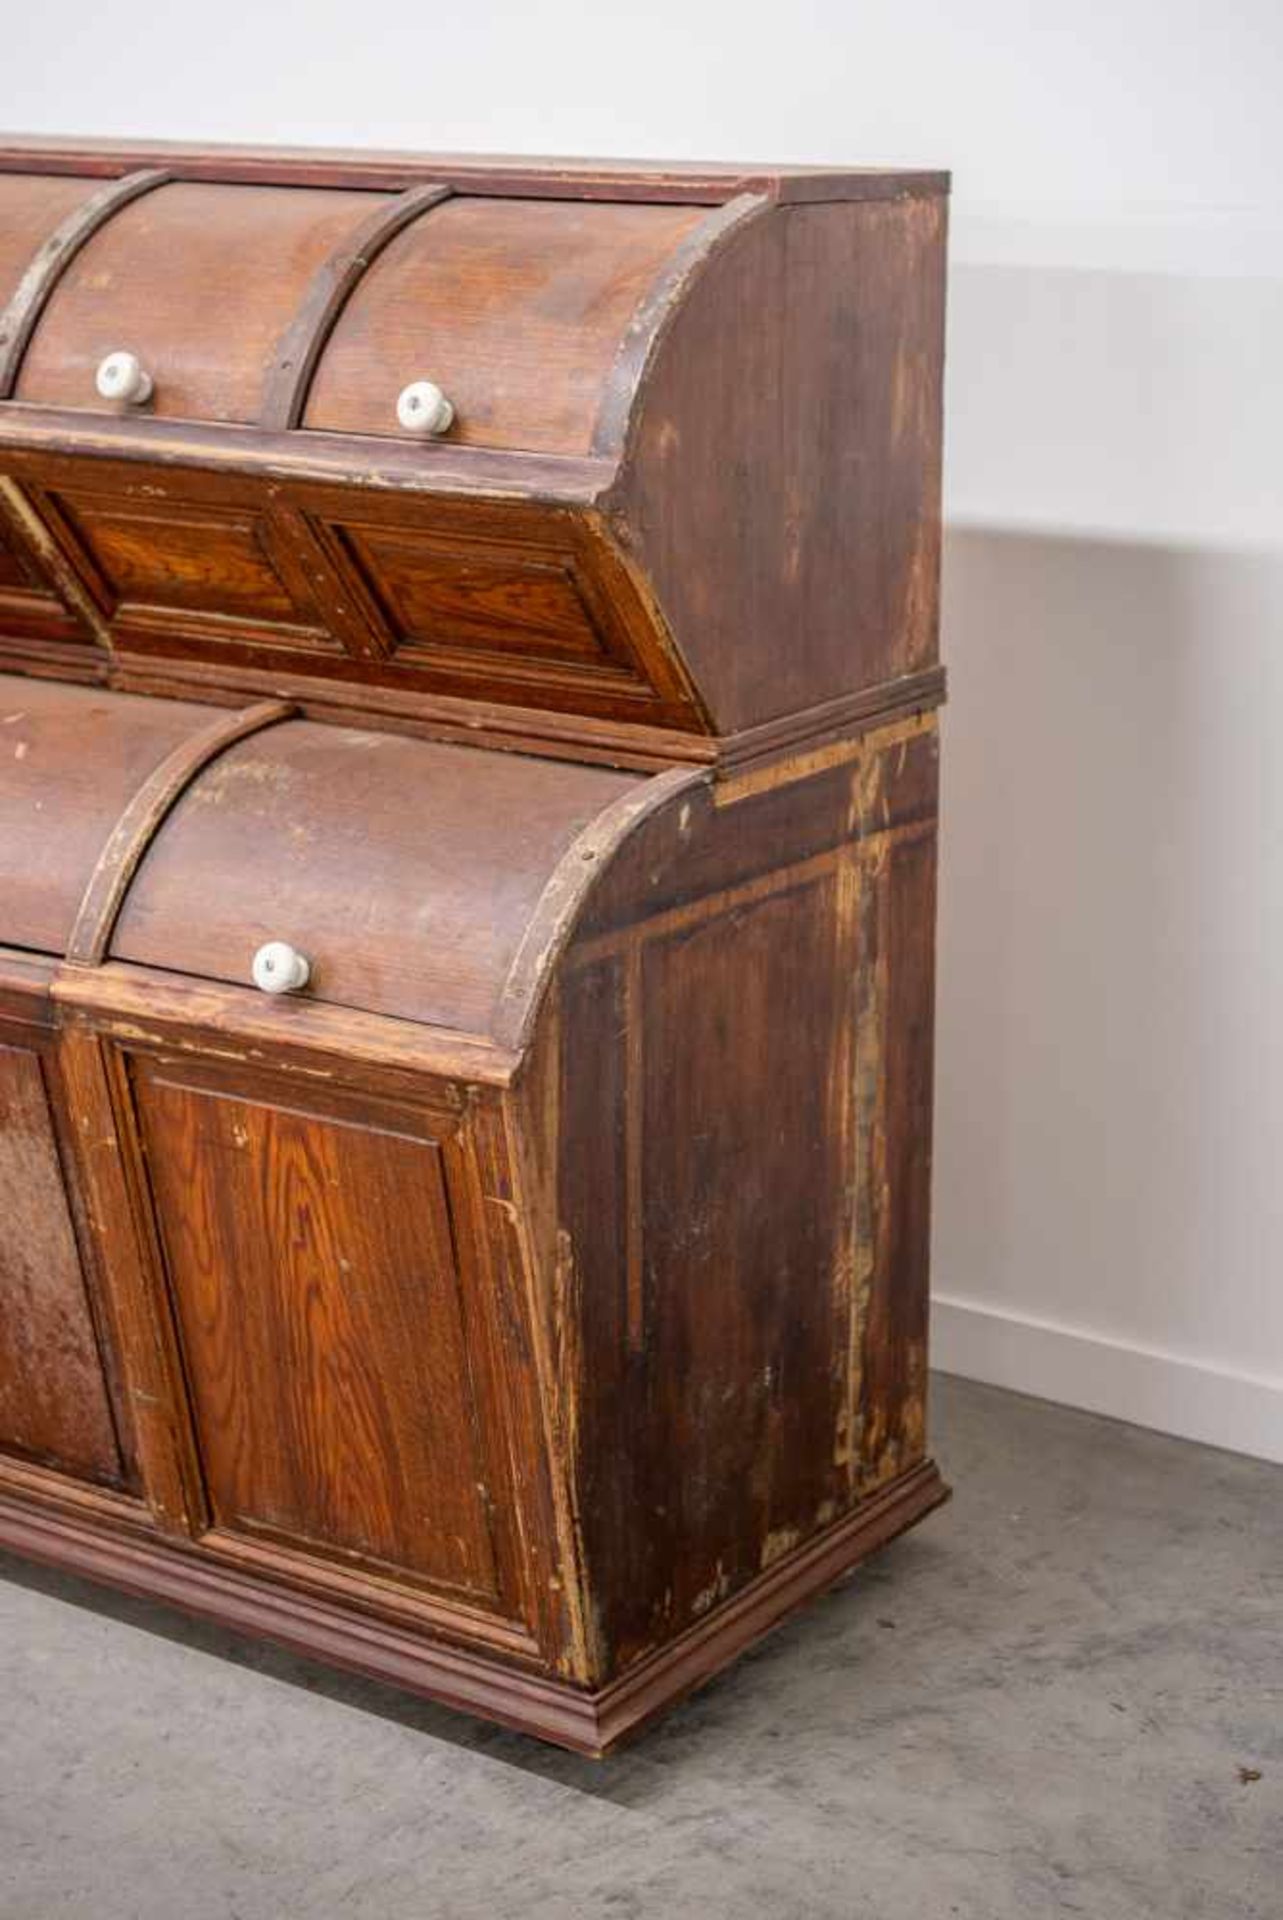 Shop cabinet with 3 antique scoops. 1920 Length: 261 cm , Width: 66 cm, Hight: 130 cm, Diameter: 0 - Bild 5 aus 8